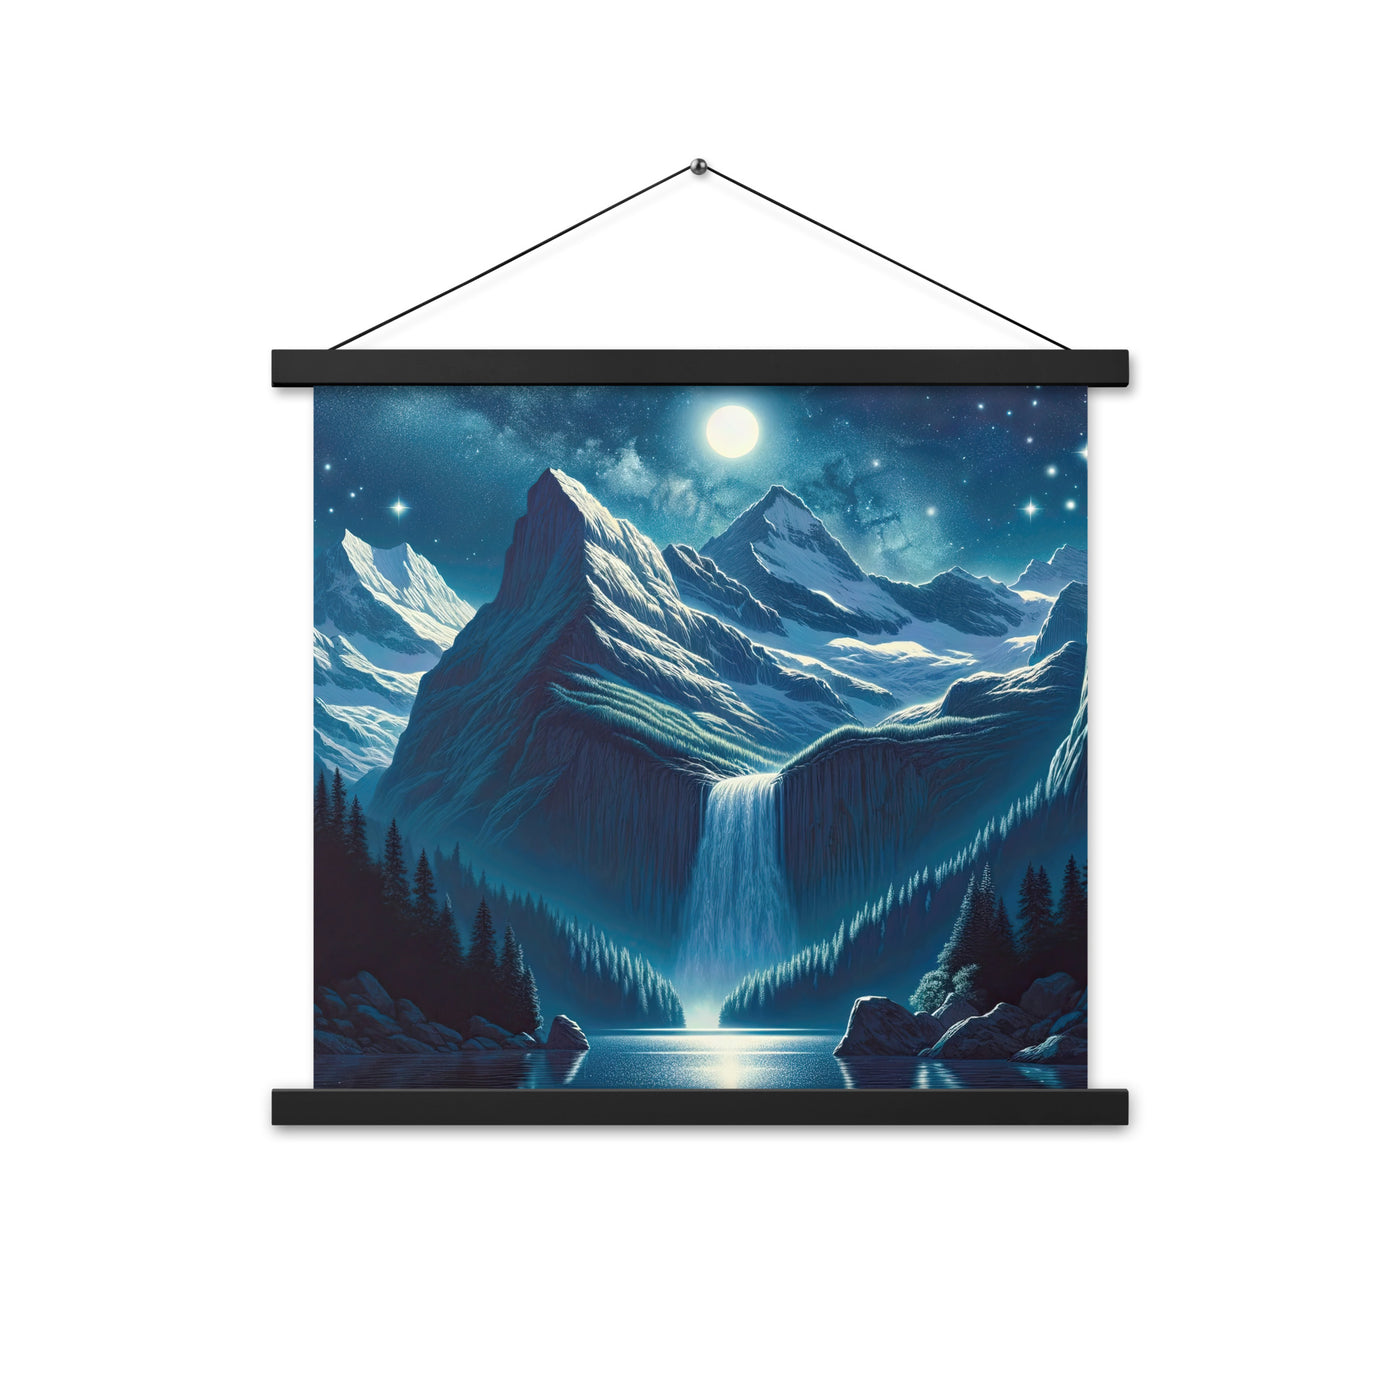 Legendäre Alpennacht, Mondlicht-Berge unter Sternenhimmel - Premium Poster mit Aufhängung berge xxx yyy zzz 45.7 x 45.7 cm